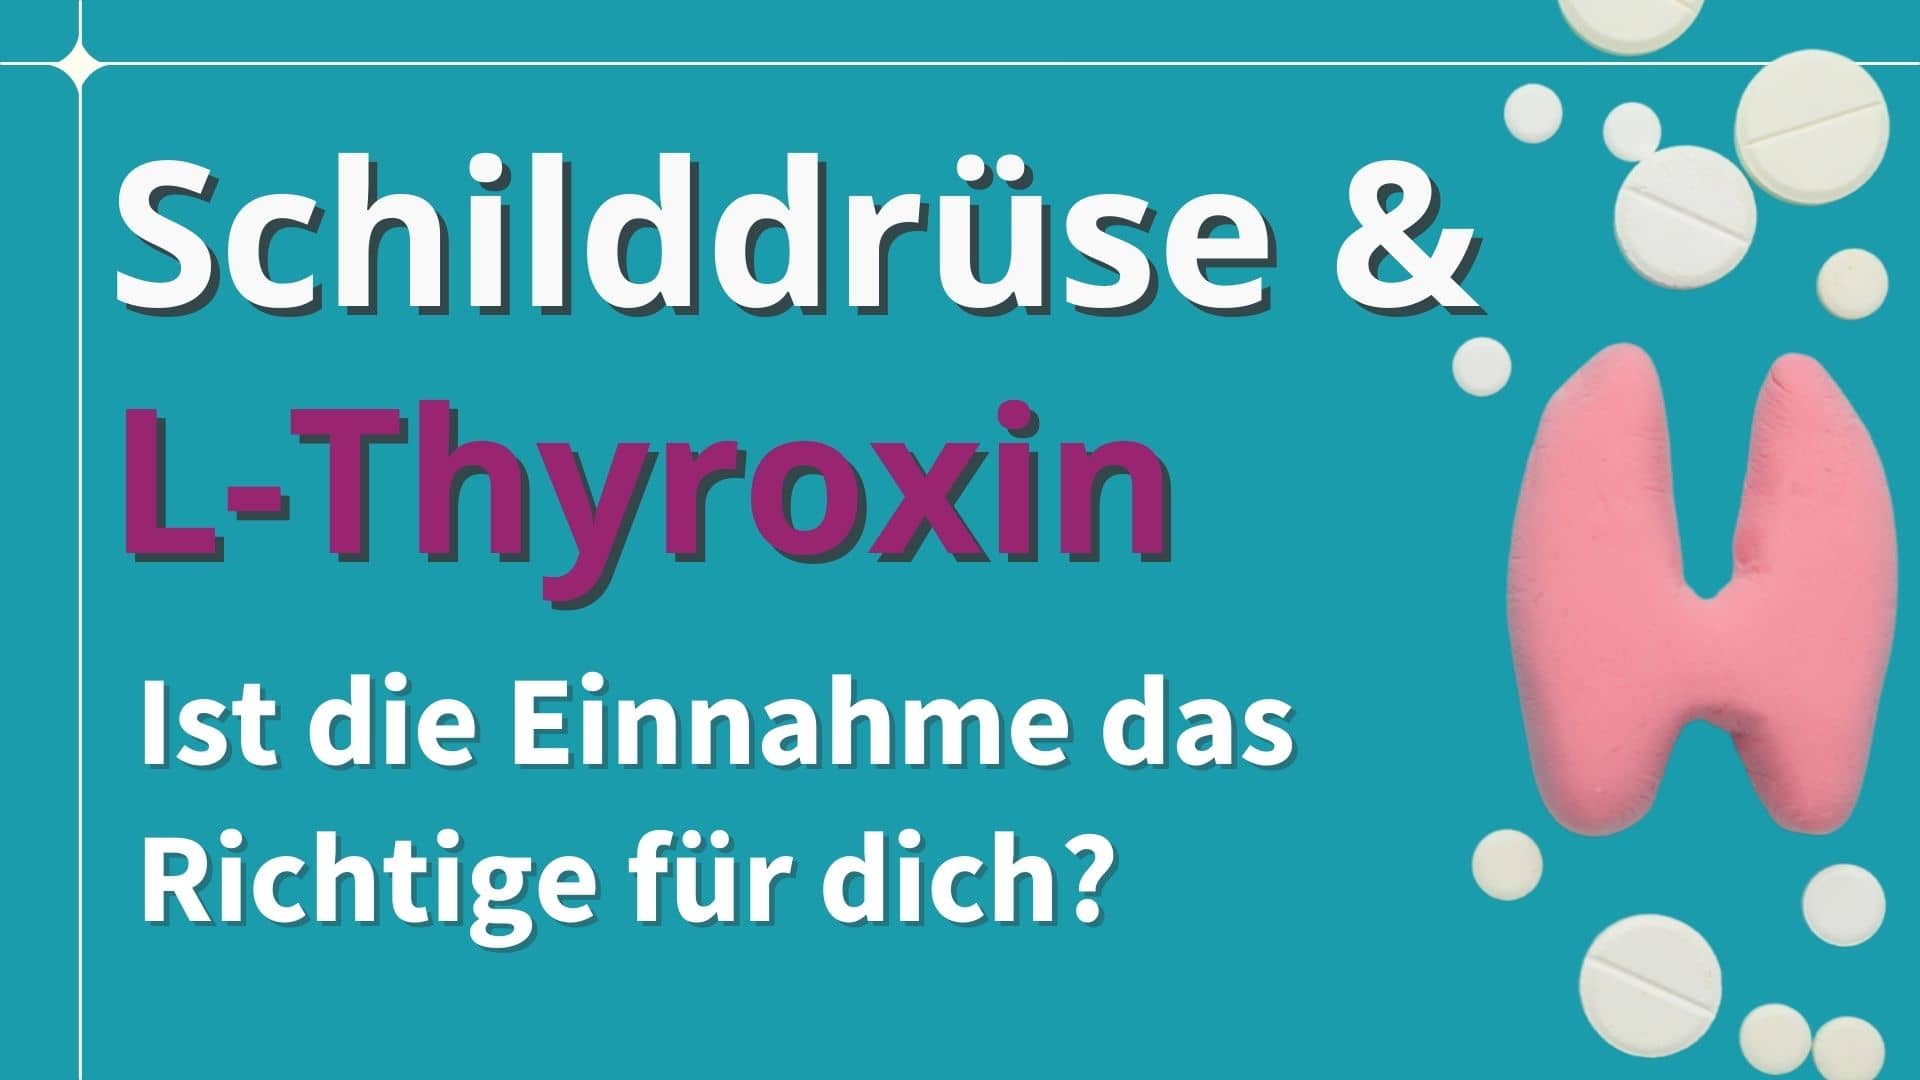 Schilddrüse & L-Thyroxin - Ist die Einnahme das Richtige für dich?